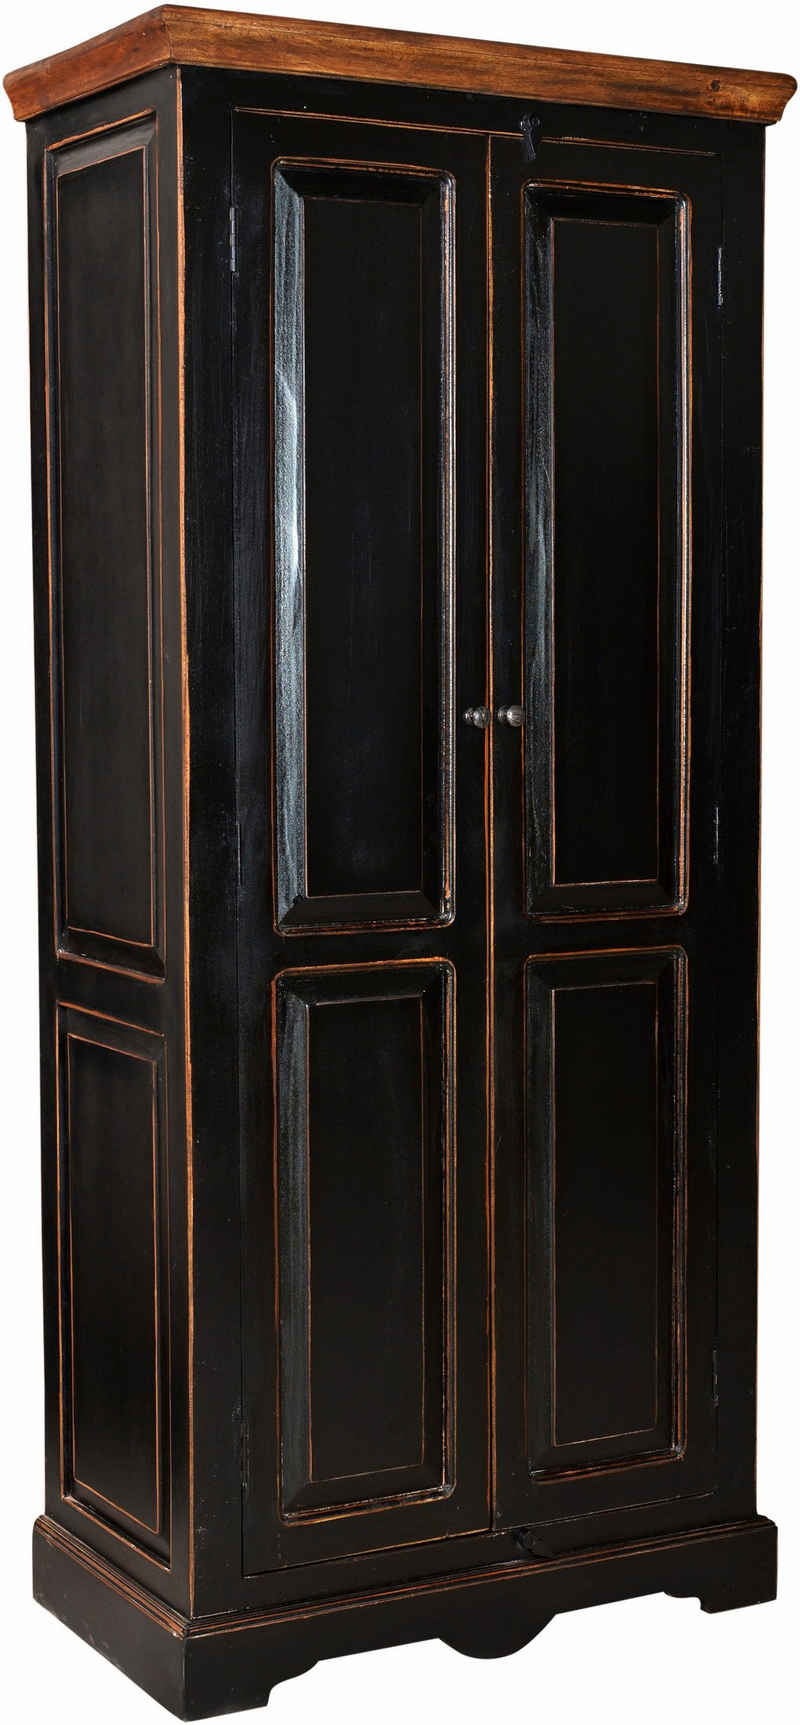 SIT Drehtürenschrank »Corsica« mit zwei Türen, Höhe 180 cm, Shabby Chic, Vintage